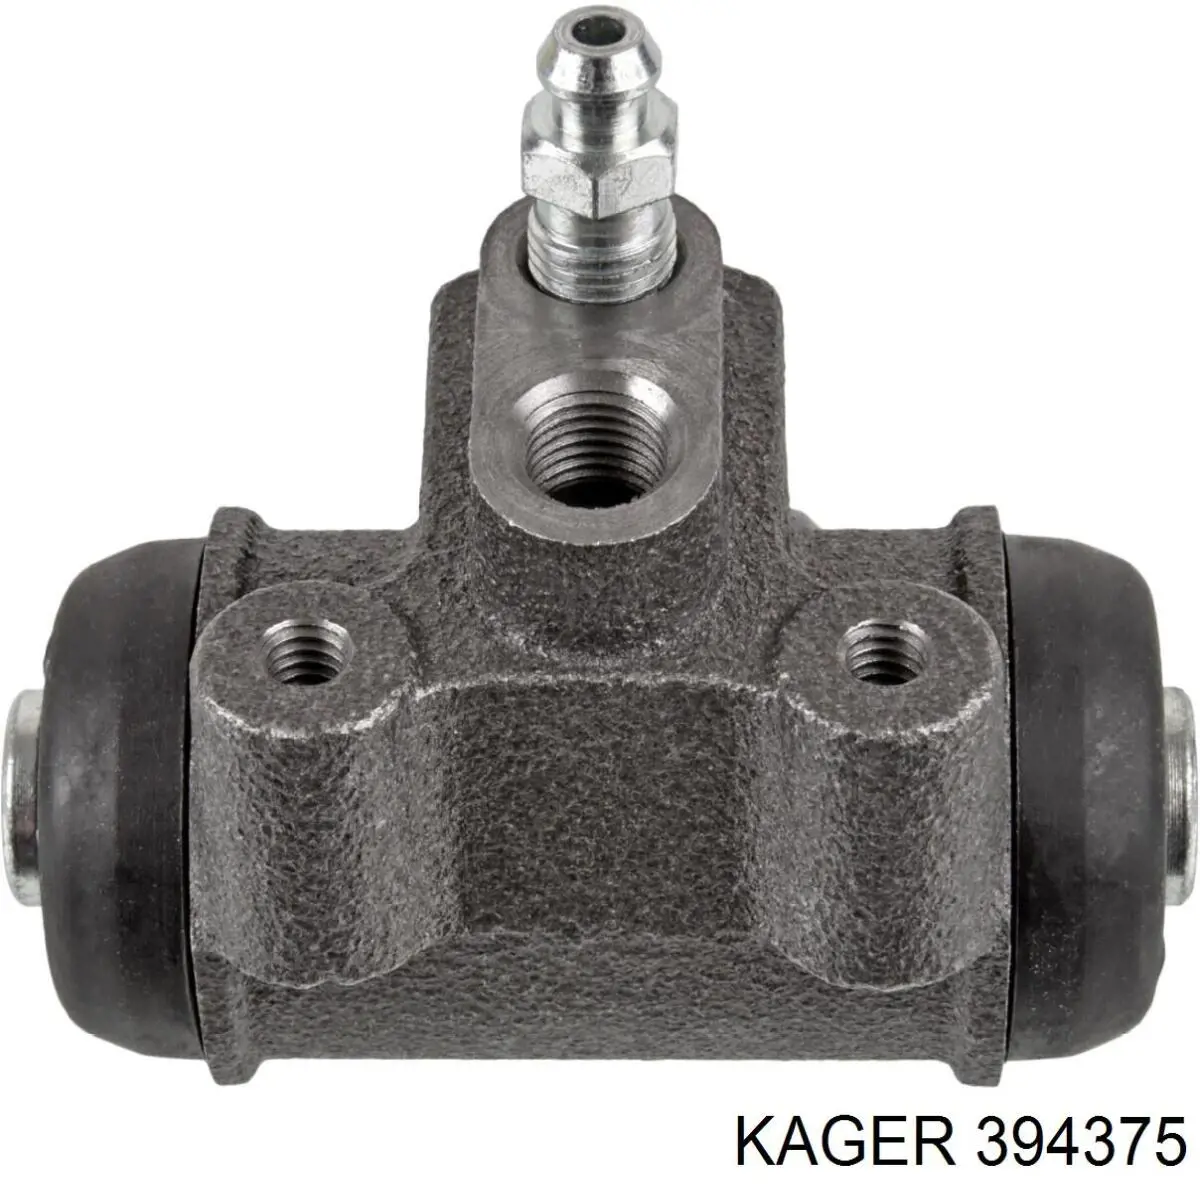 394375 Kager цилиндр тормозной колесный рабочий задний